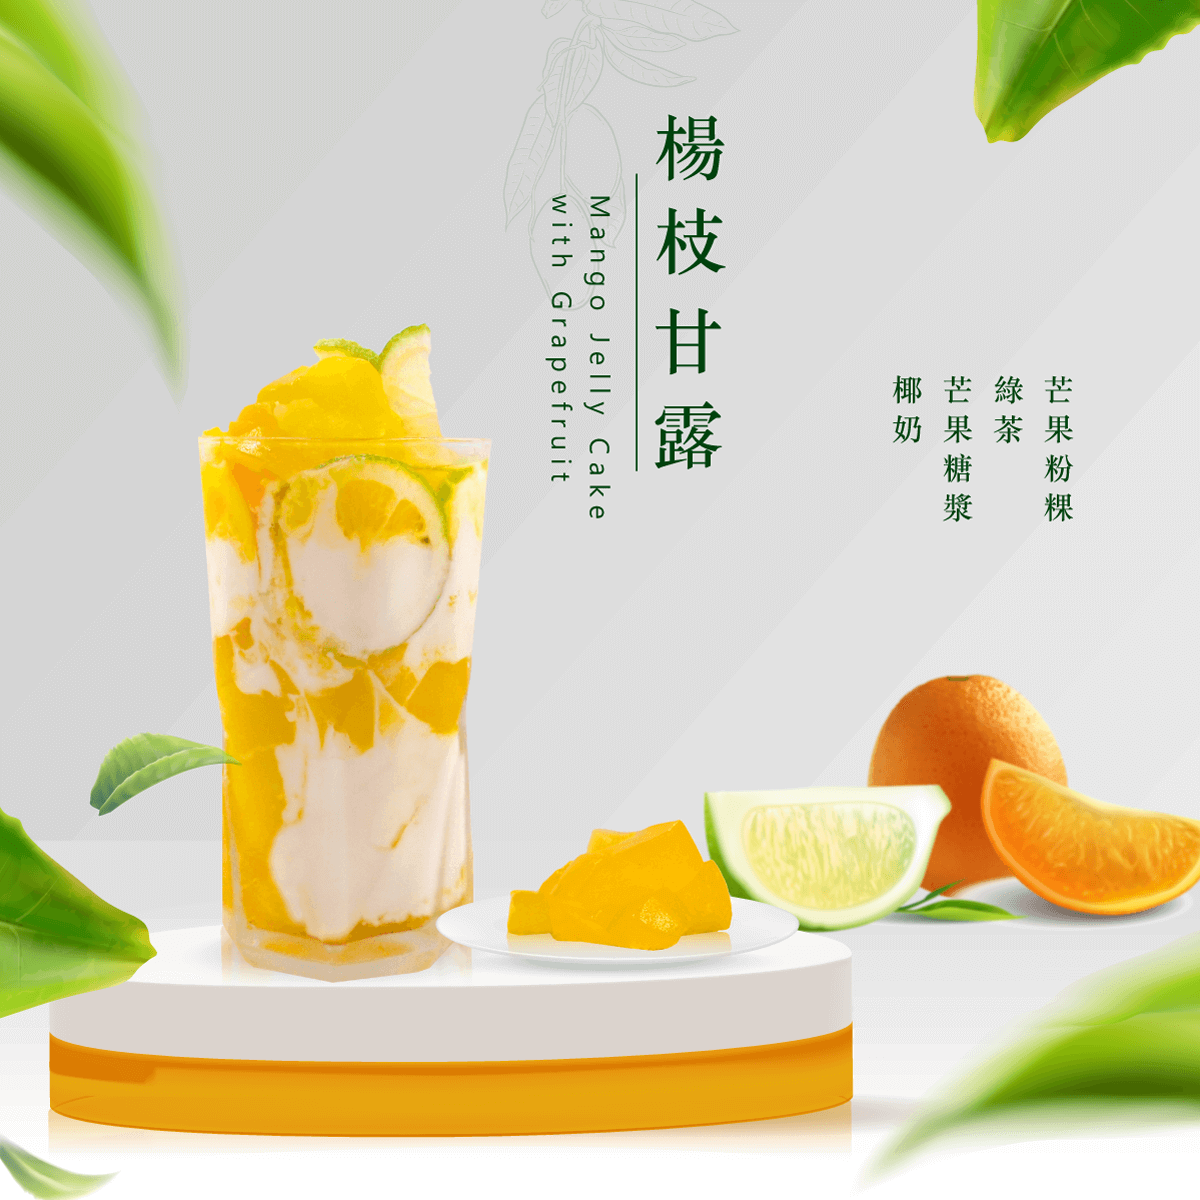 Mango-Gelee-Kuchen mit Grapefruit (Mango Sago)